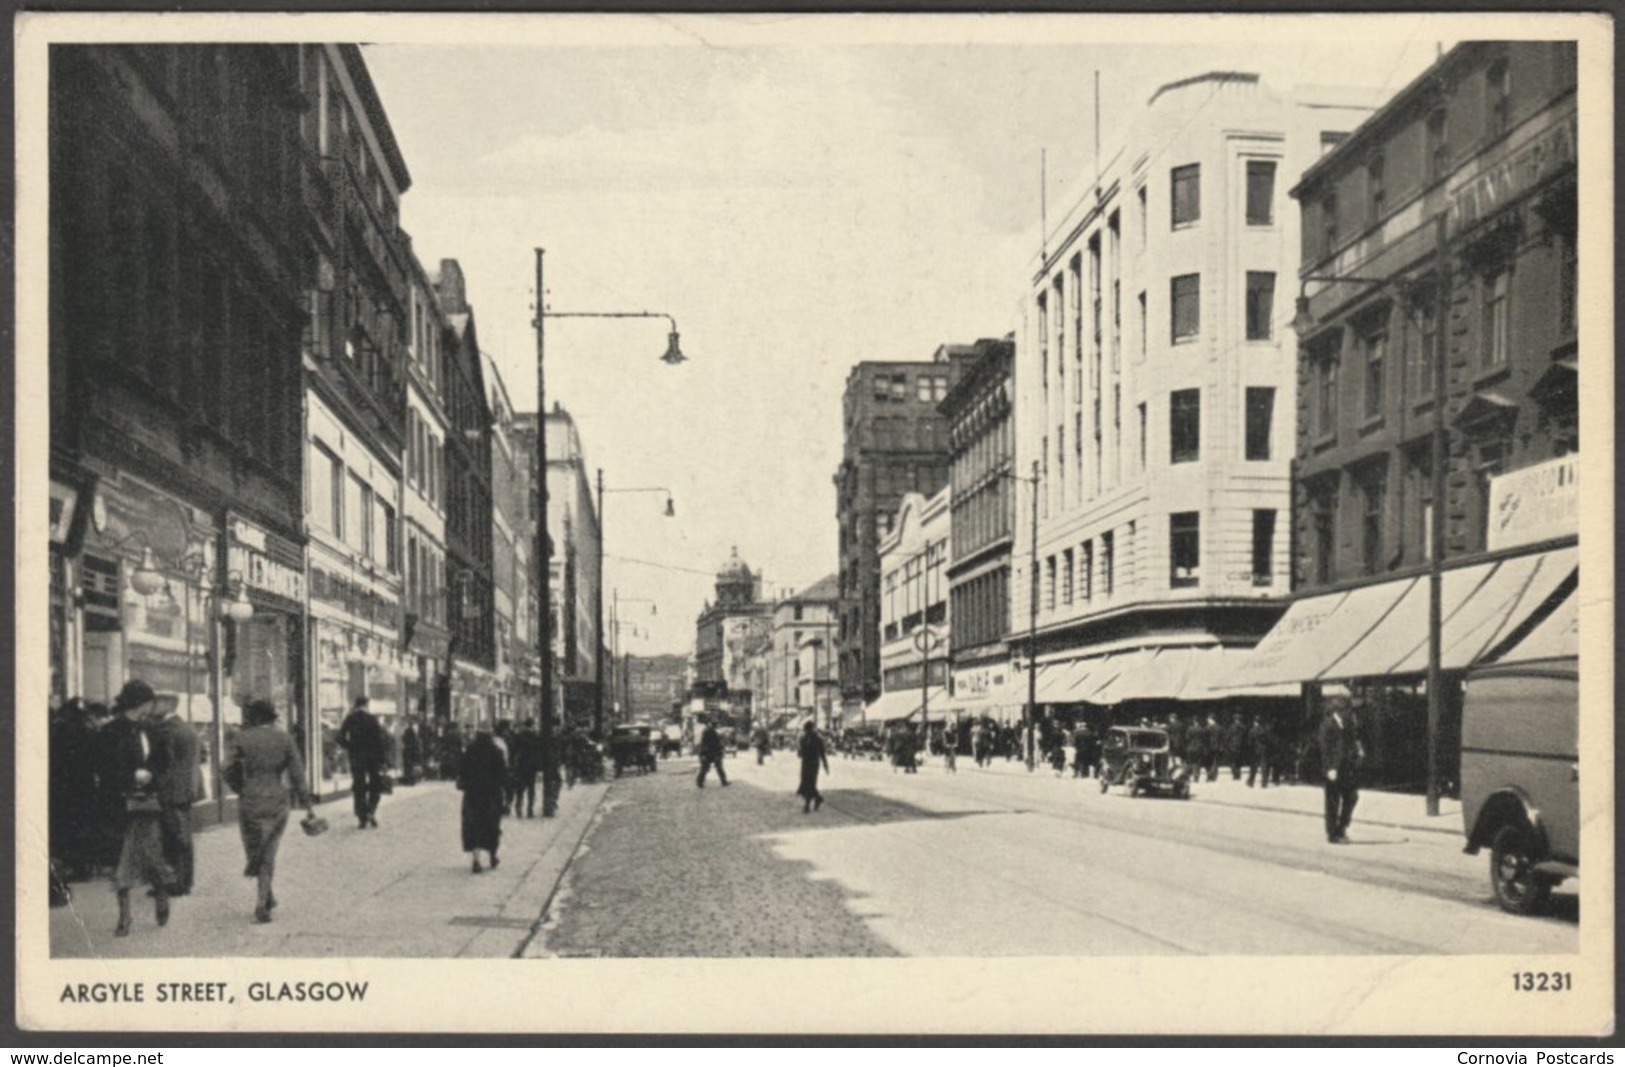 Argyle Street, Glasgow, 1955 - Salmon Postcard - Lanarkshire / Glasgow